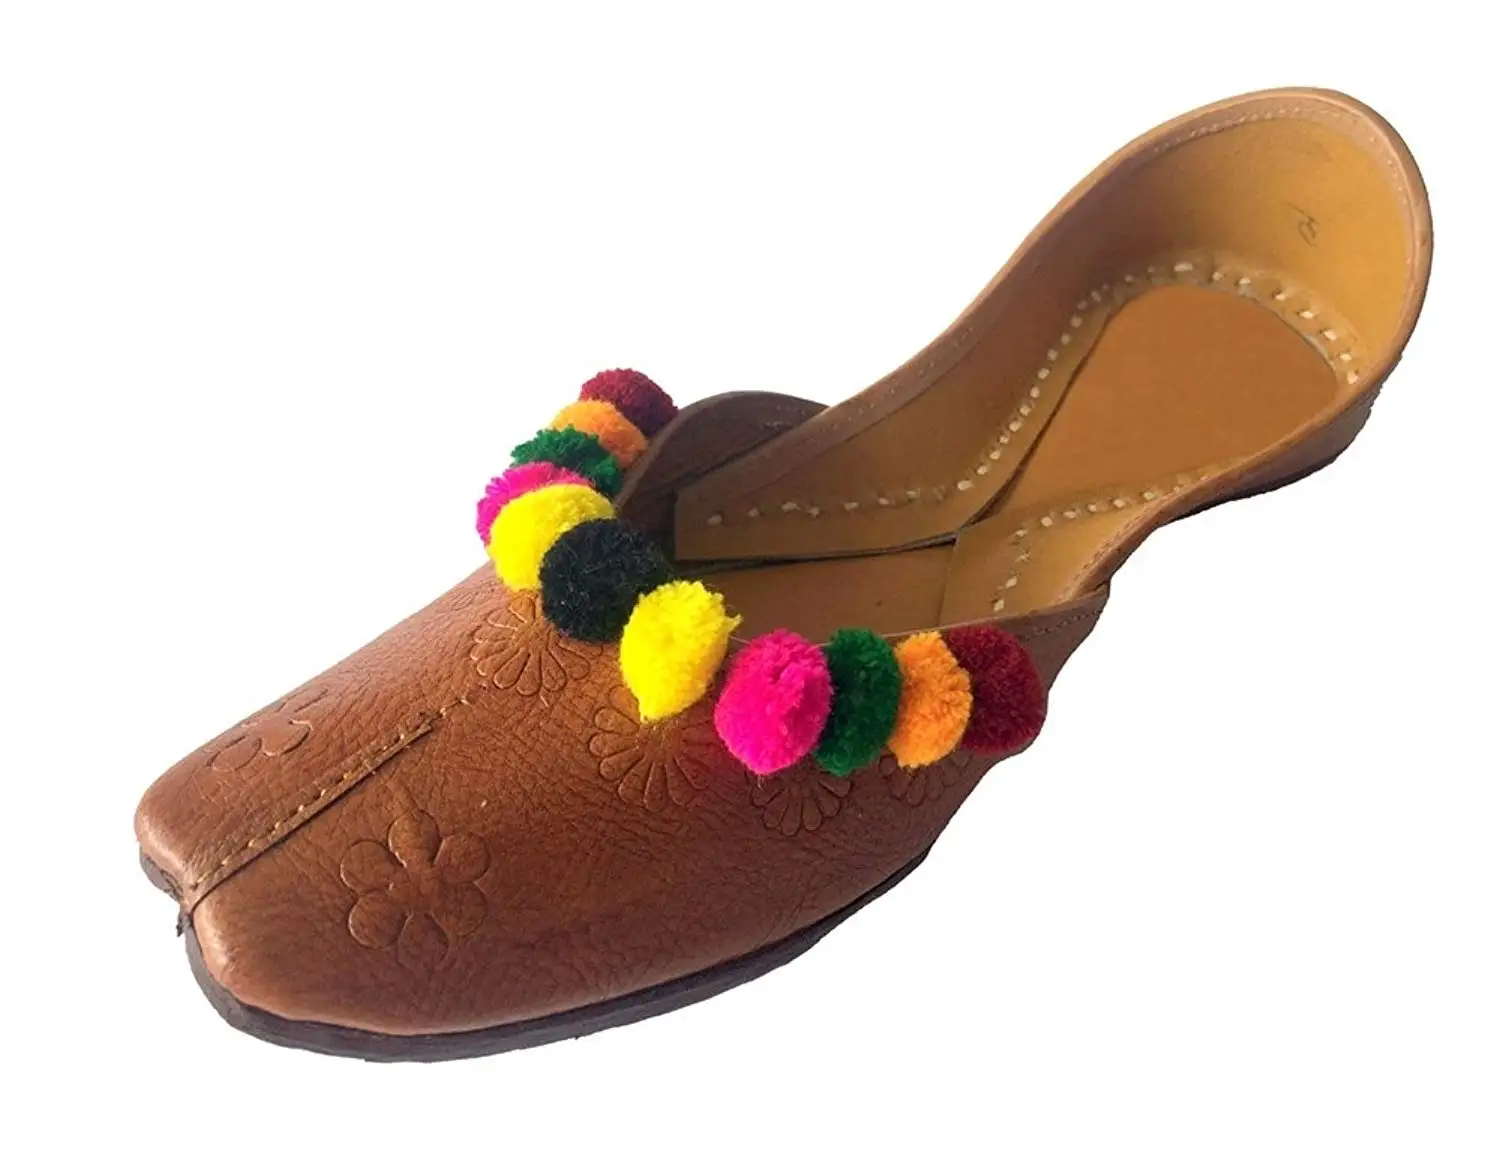 shoes for salwar kameez